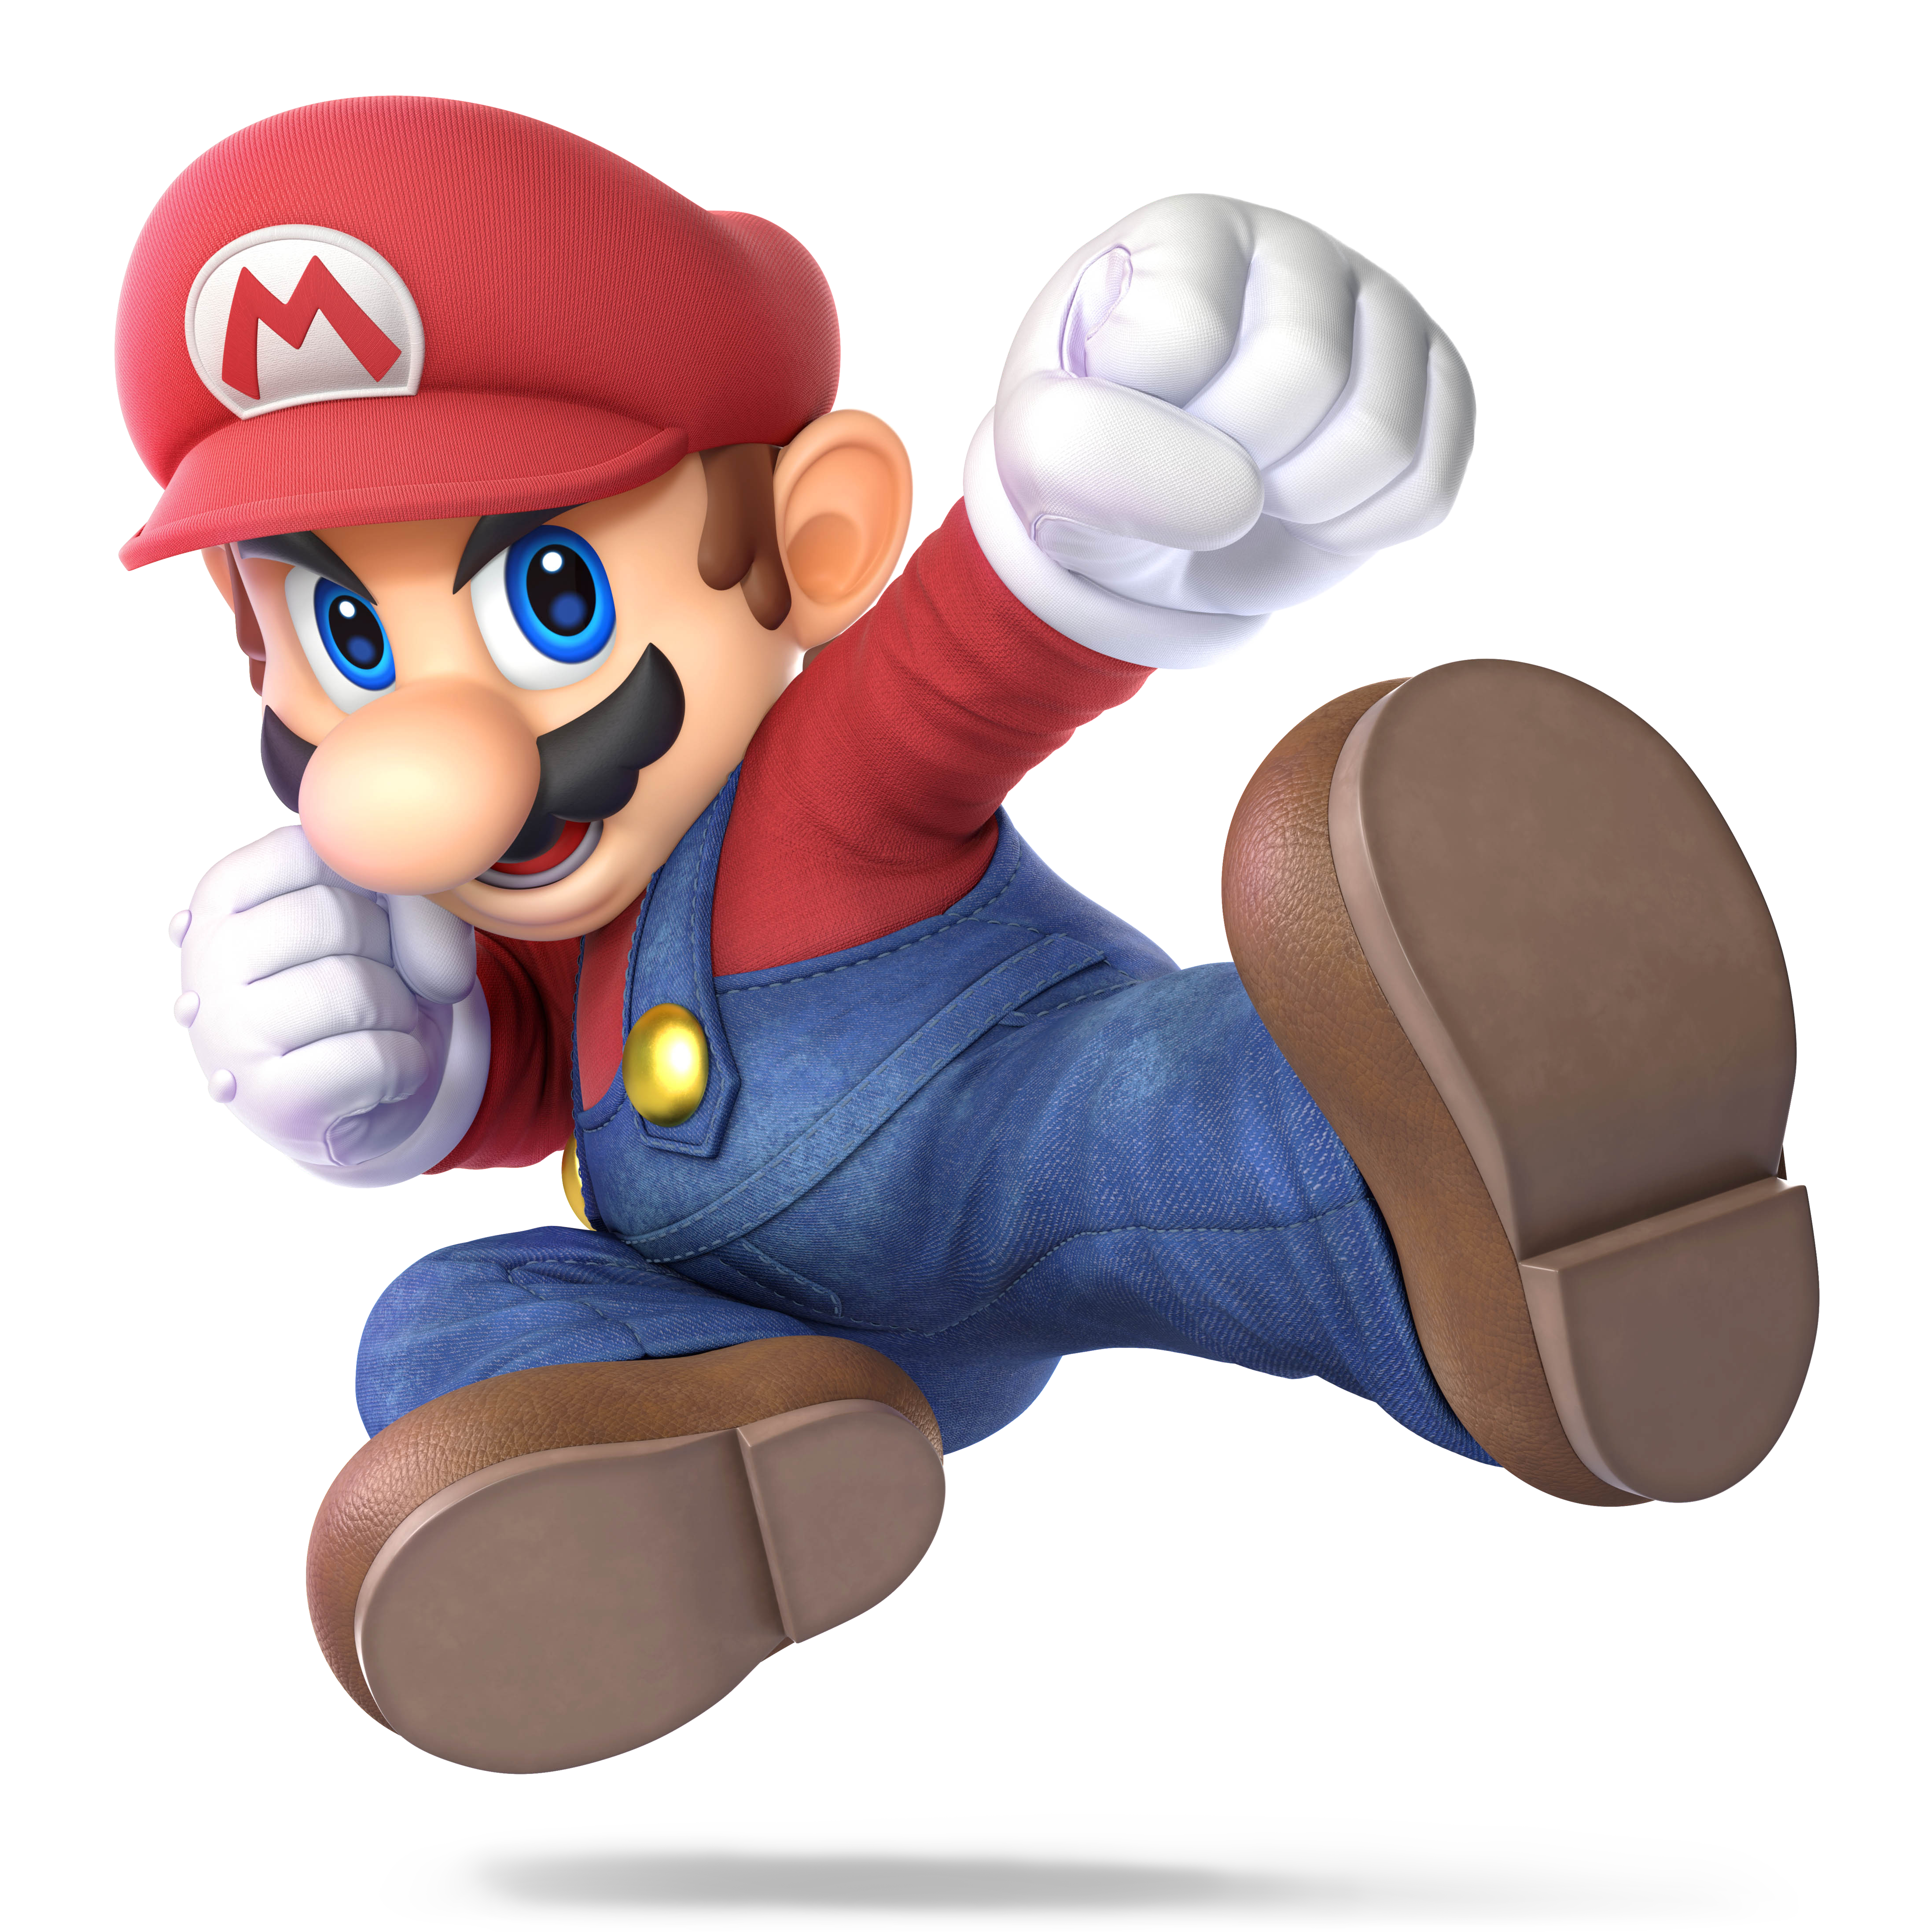 Марио Нинтендо. Super Mario Smash Bros. Марио из смеш БРОС ультимейт. Super Smash Bros Марио.